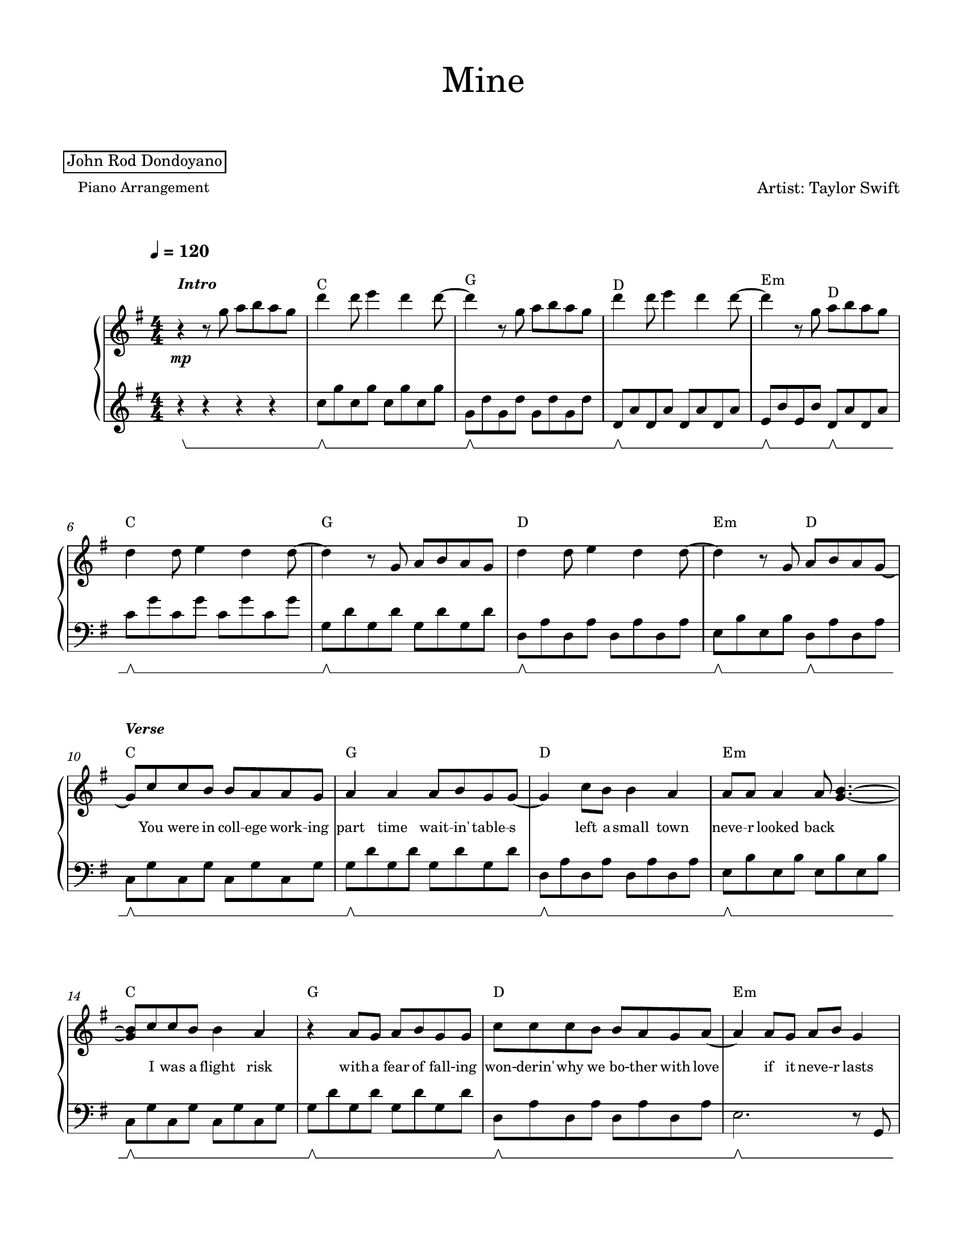 Taylor Swift - Mine (PIANO SHEET) by John Rod Dondoyano